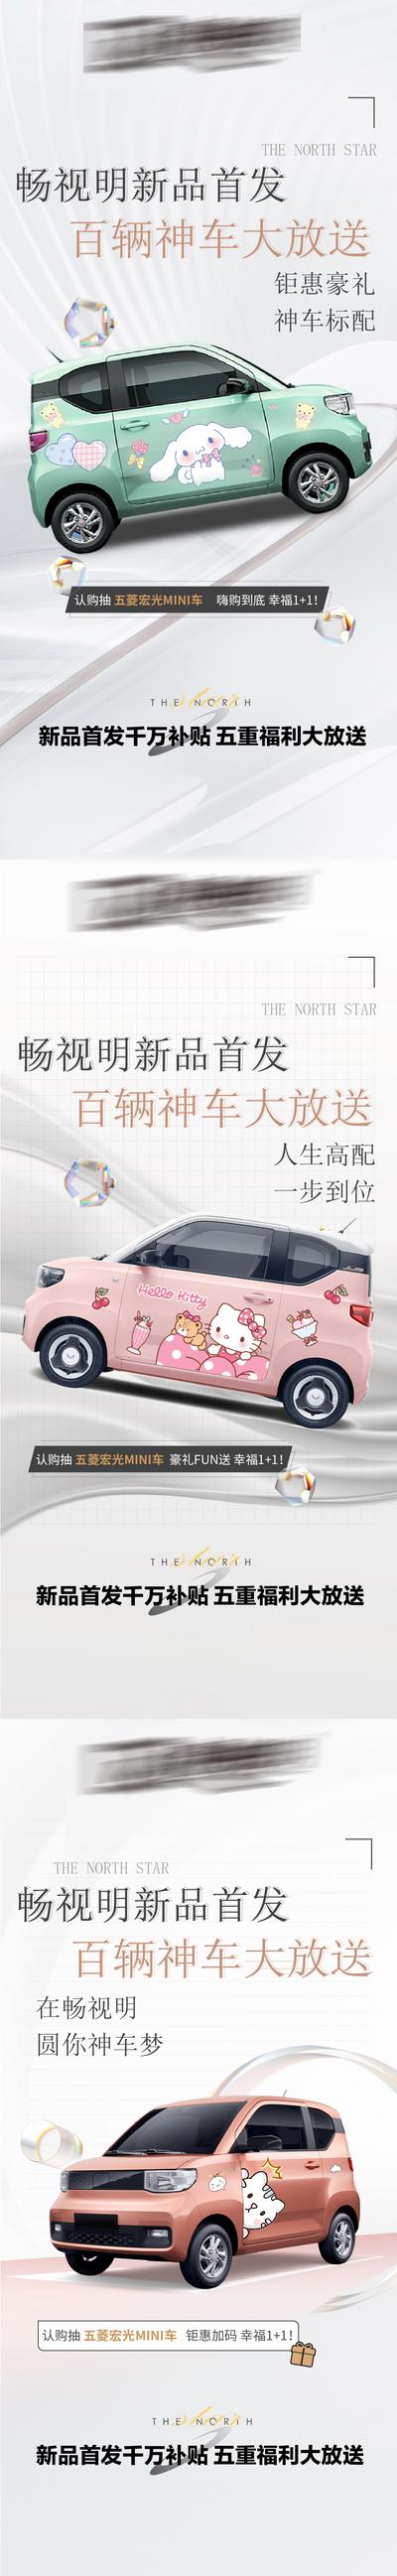 南门网 广告 海报 新能源 汽车 背景板 活动 热销 送车 五菱宏光 迷你系列 宏光mini 马卡龙